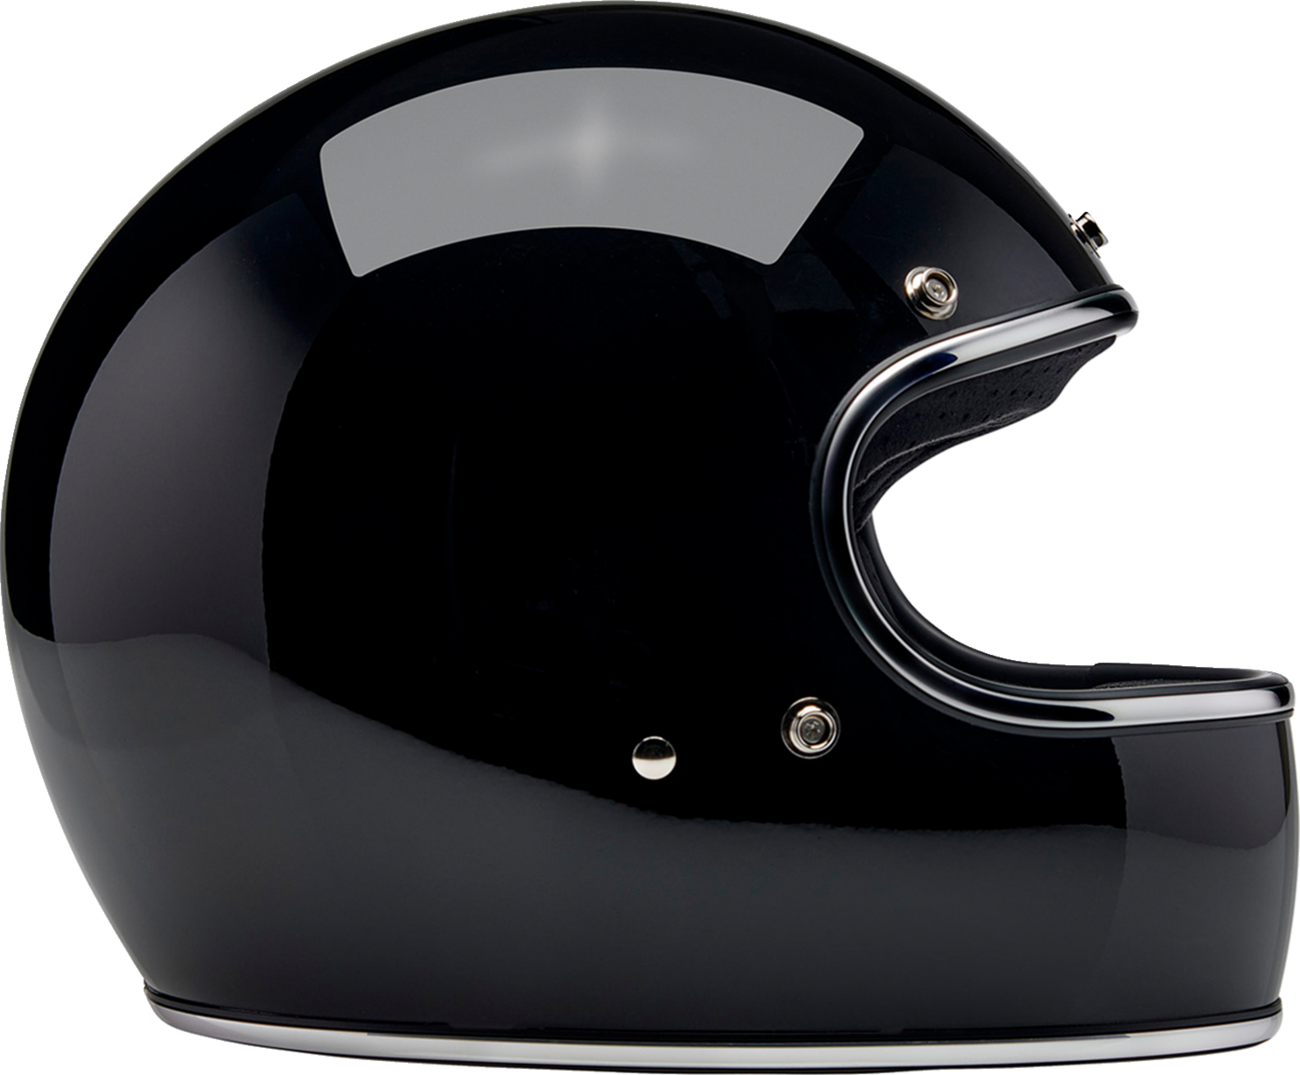 BILTWELL Gringo Helmet - Gloss Black - Large 1002-101-504